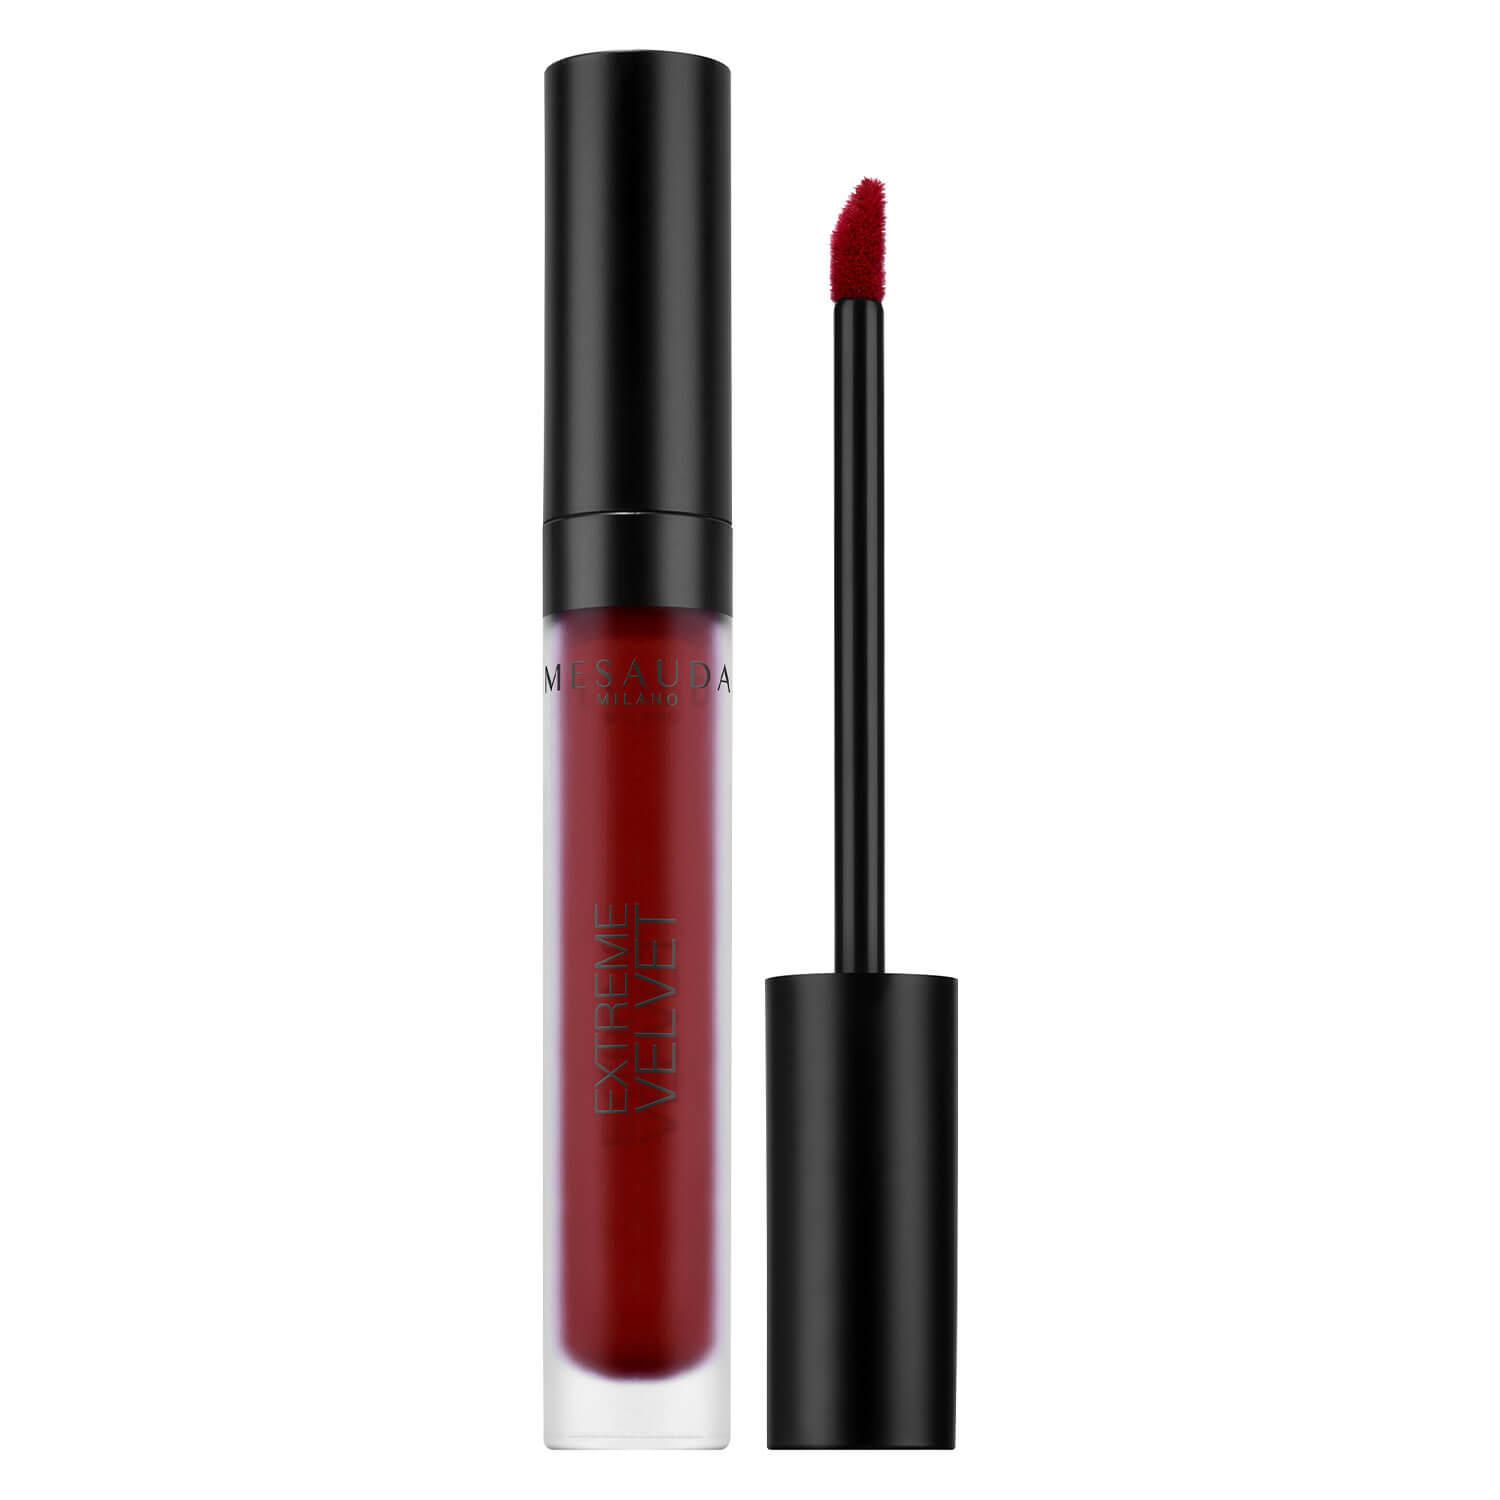 MESAUDA Lips - Extreme Velvet Matt Liquid Lipstick She's A Lady 207